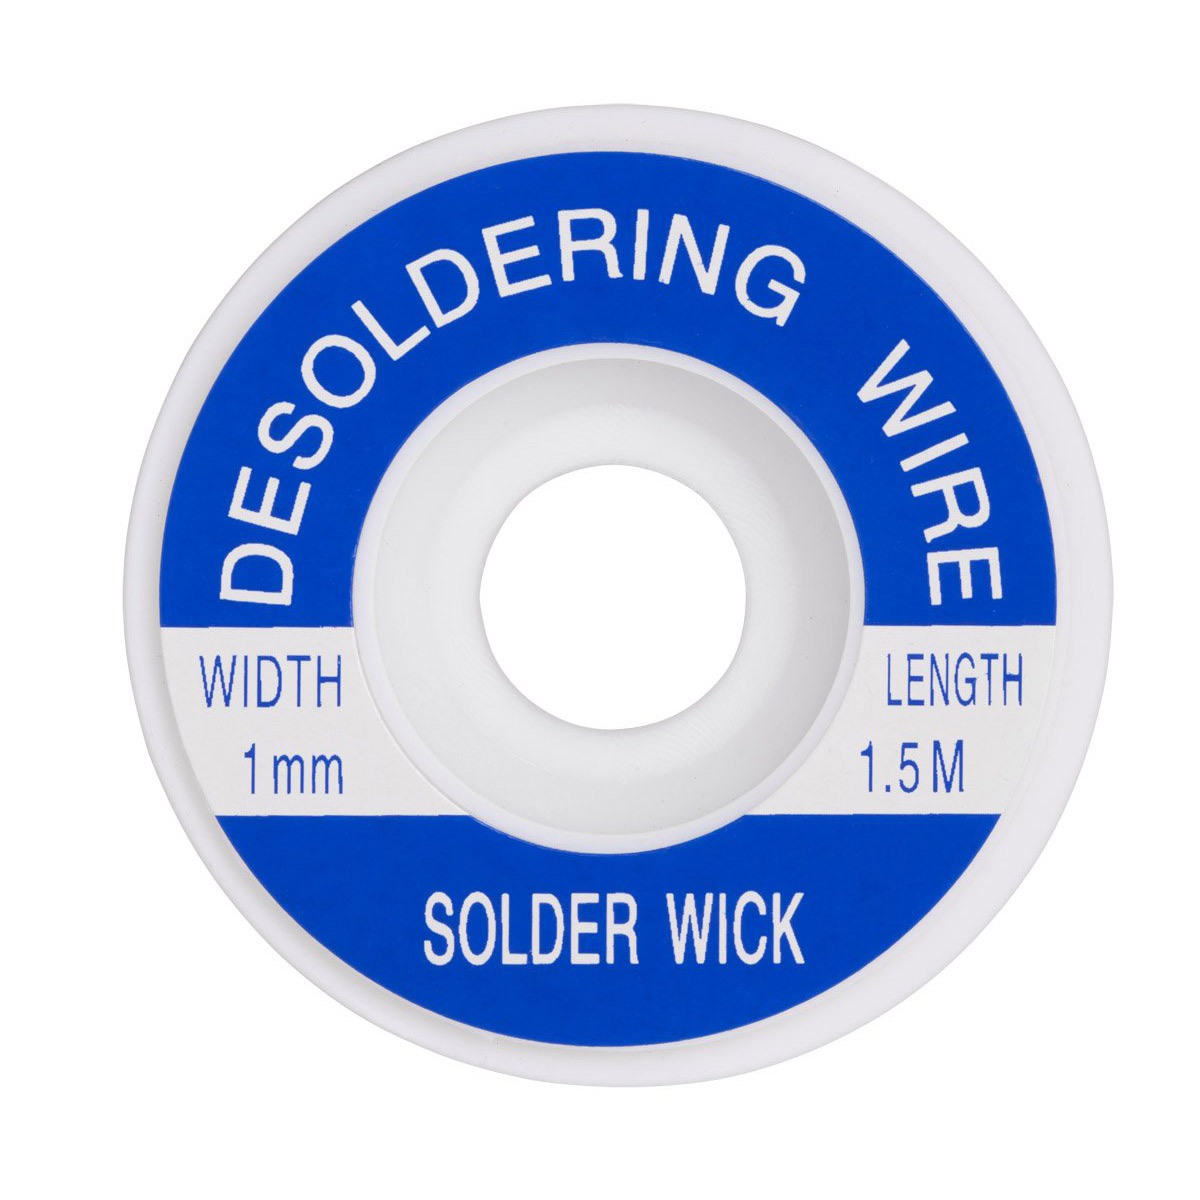 DM-0031-1 . Desoldering wire 1mm 1.5m